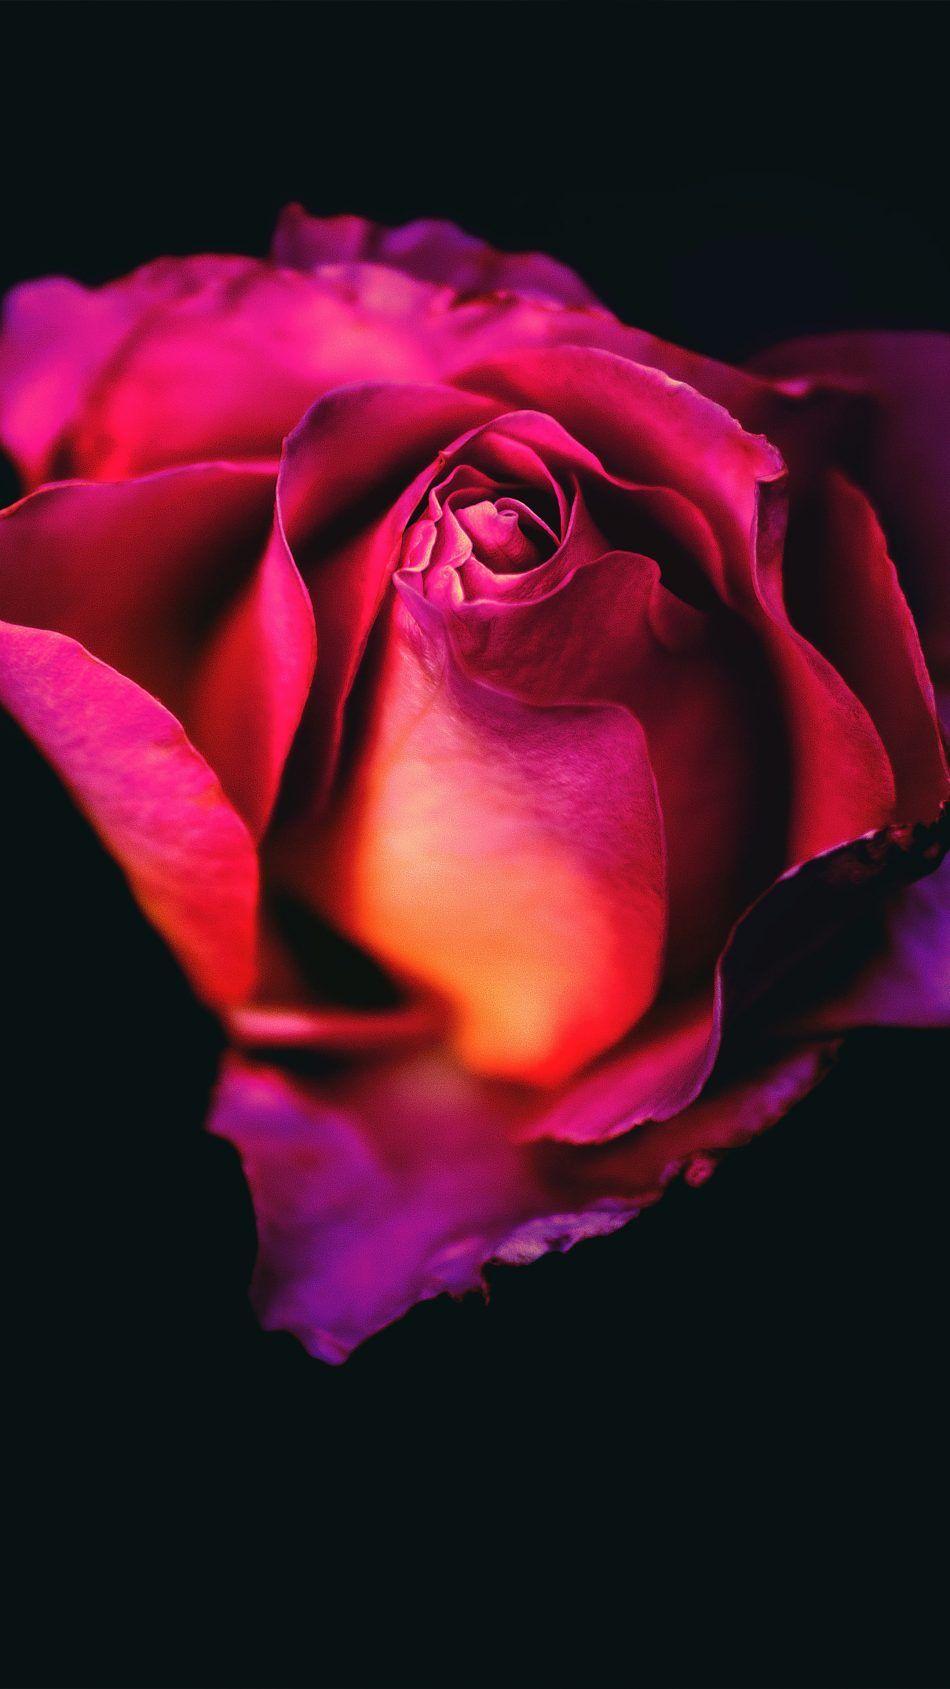 Rose Flower Dark Background 4K Ultra HD Mobile Wallpaper. Rose wallpaper, Wallpaper iphone roses, Rose flower wallpaper